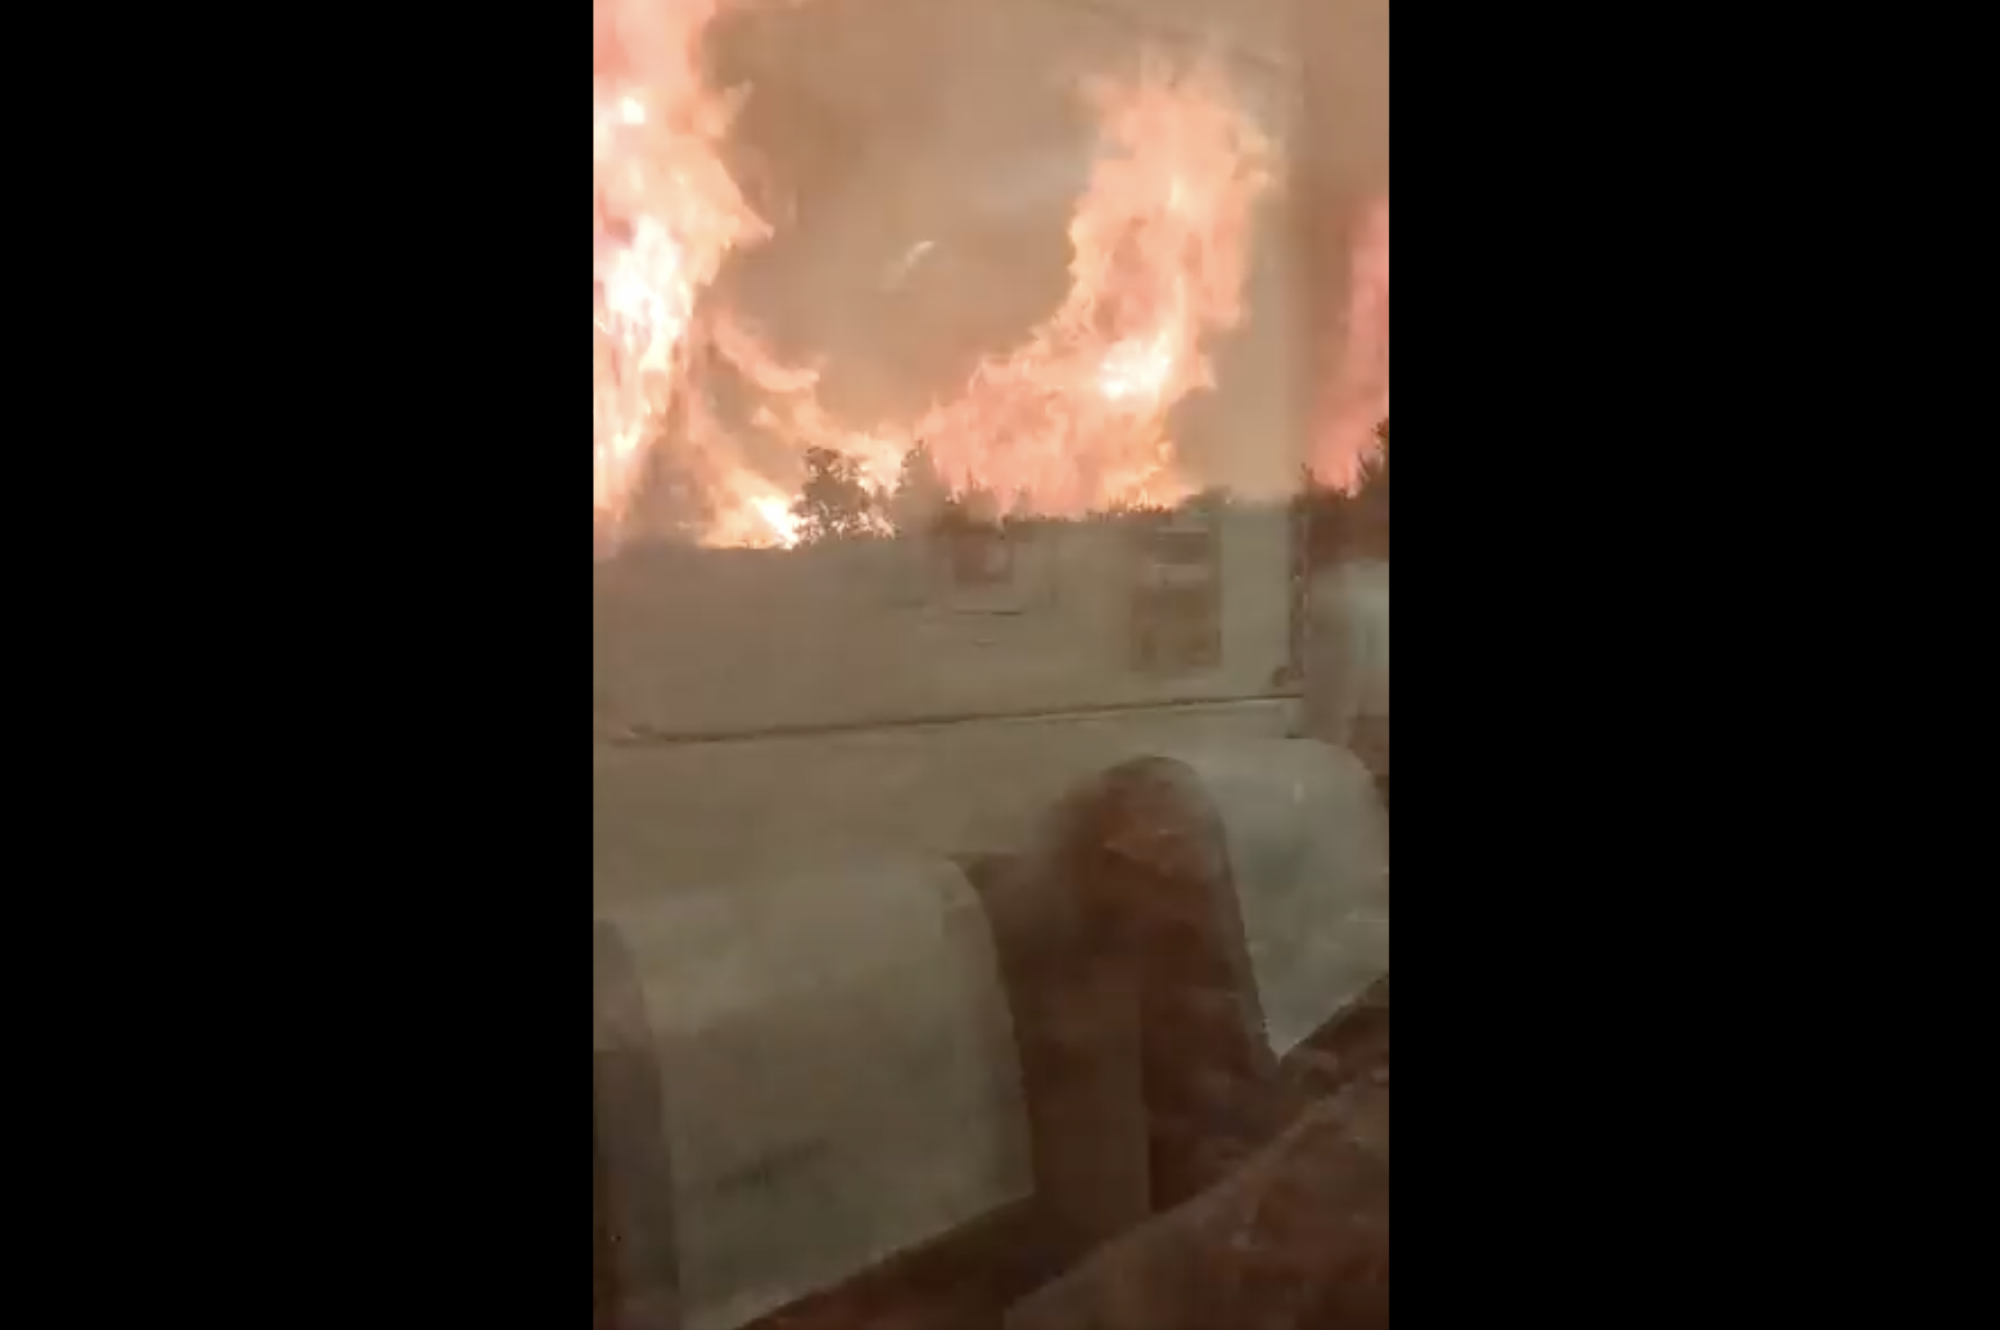 Erdőtűzbe futott bele egy vonat Spanyolországban, a kétségbeesetten menekülő utasok egy része megégett